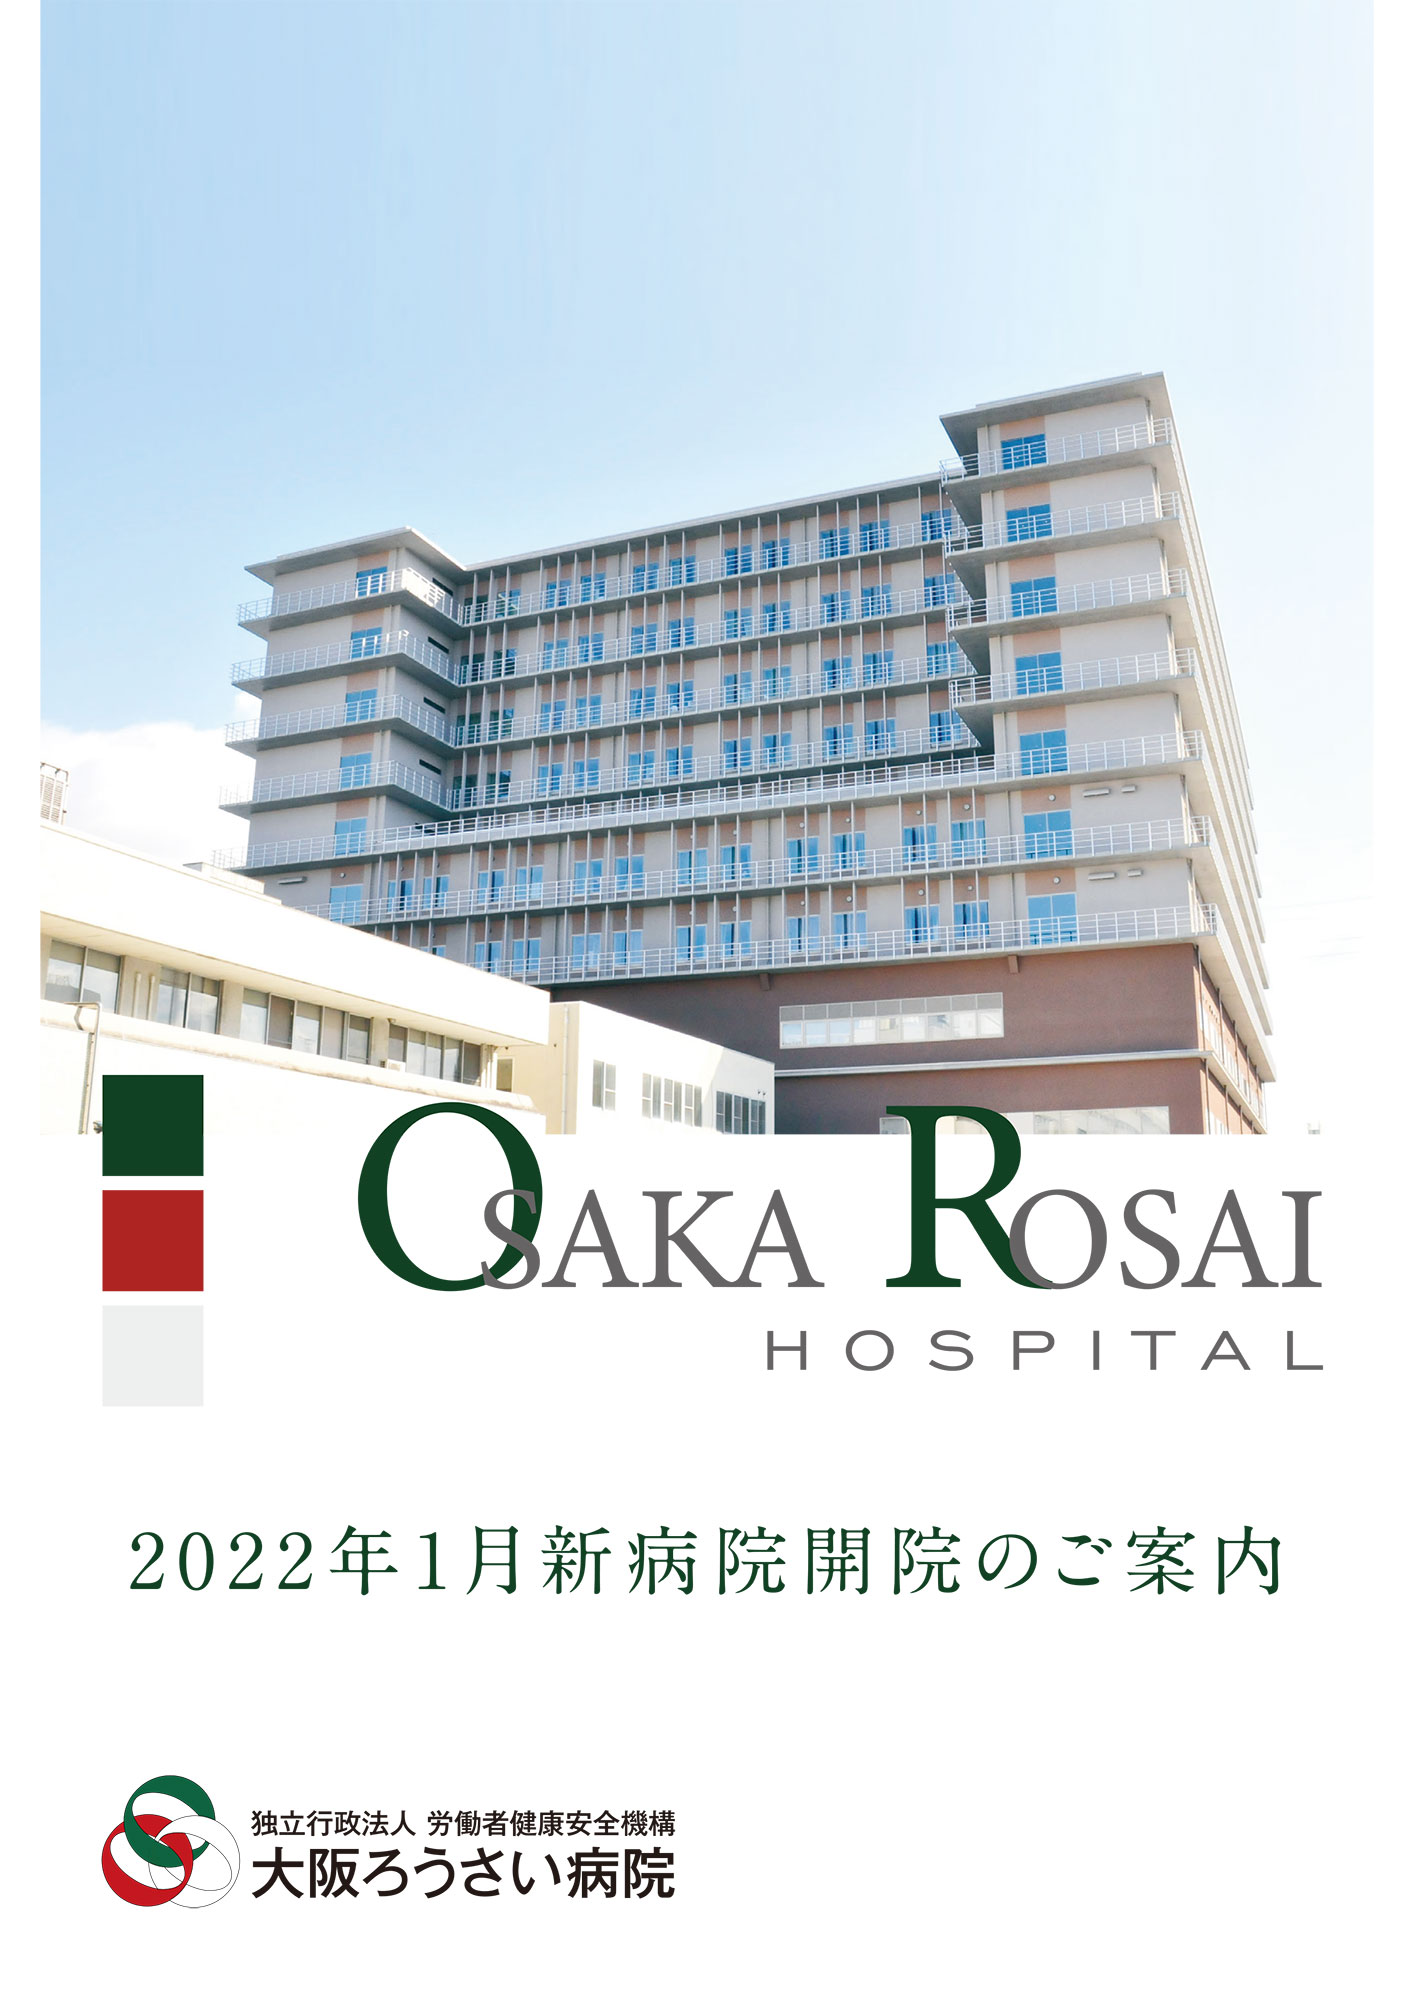 2021年12月作成「大阪労災病院」新病院パンフレット